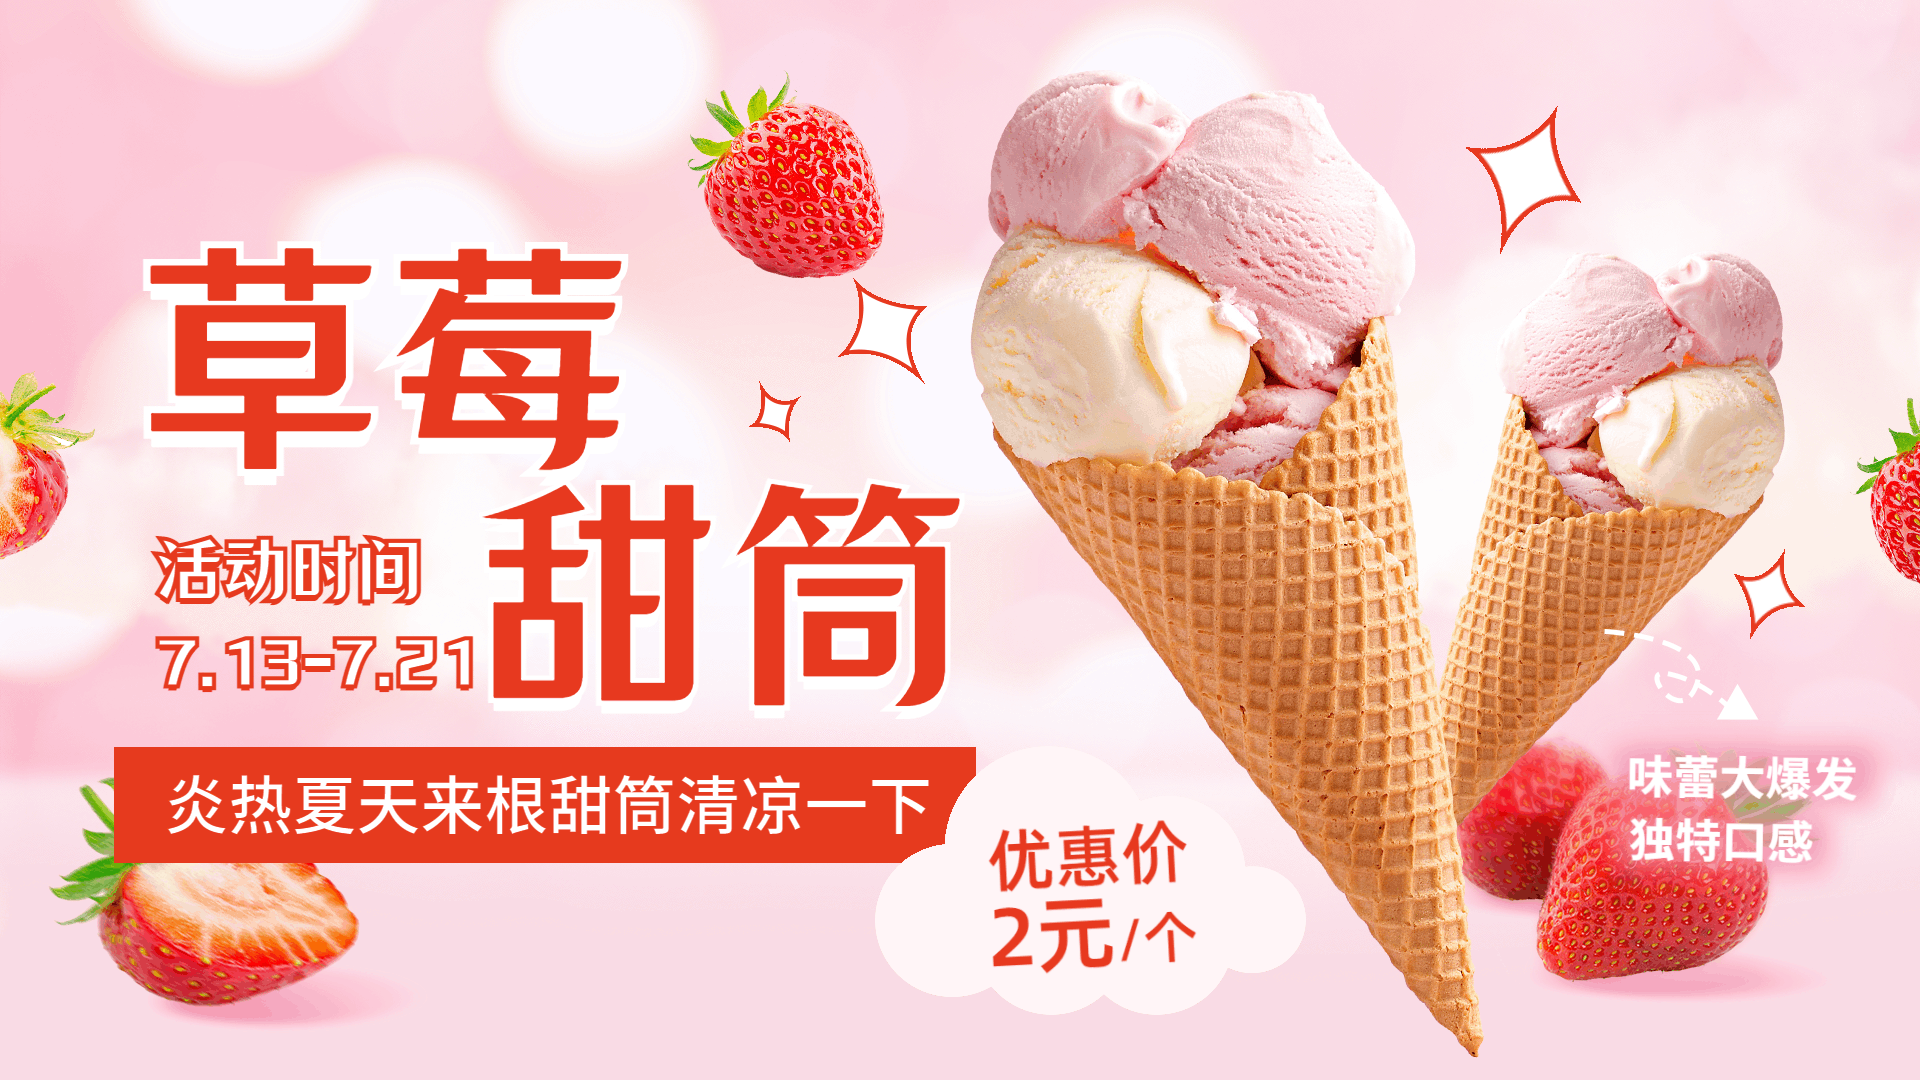 冰淇淋商品促销推荐横屏动图预览效果